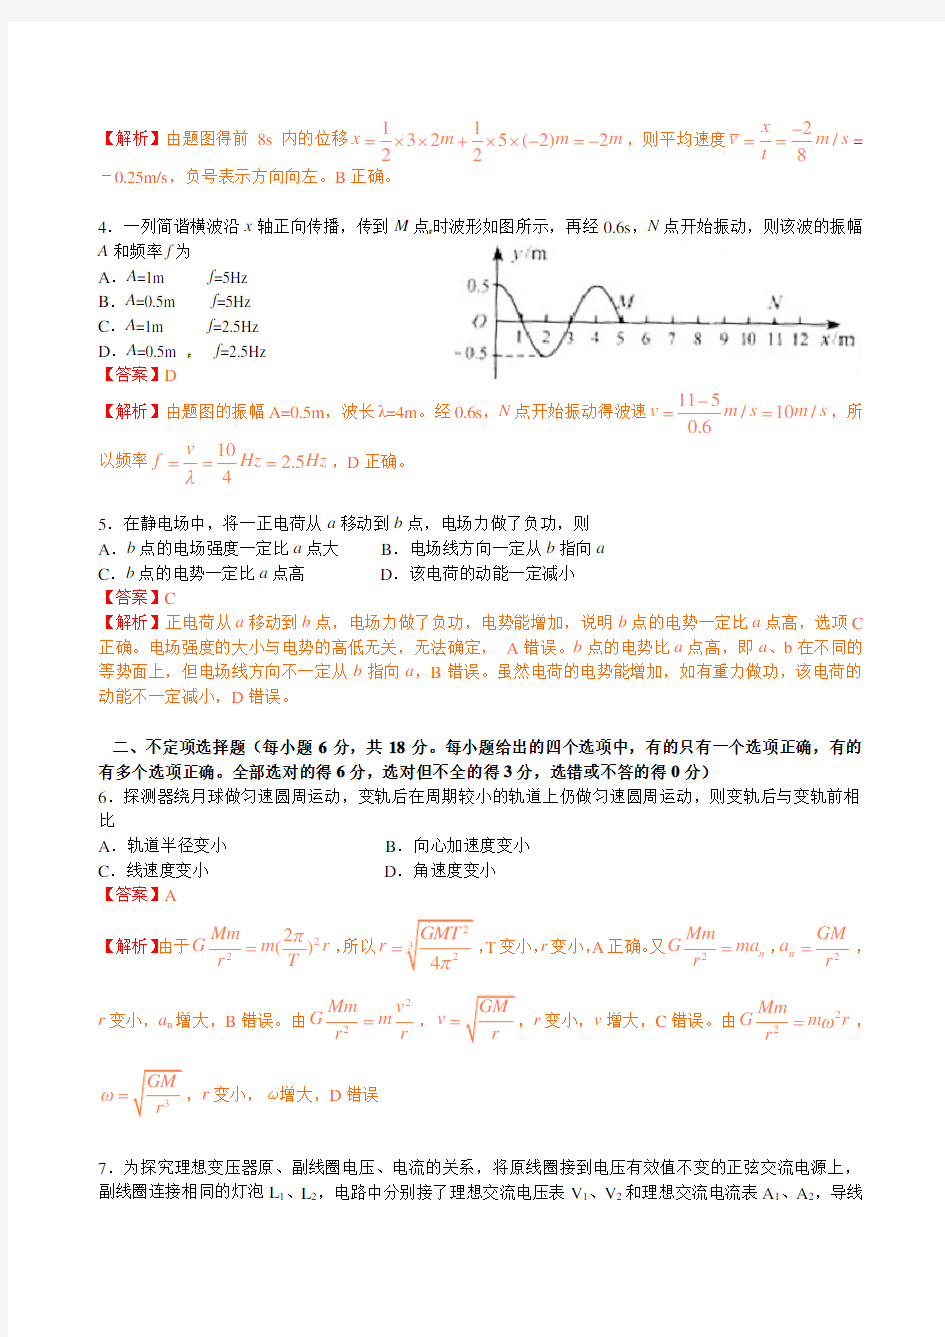 2010年高考物理试题天津卷试题和答案